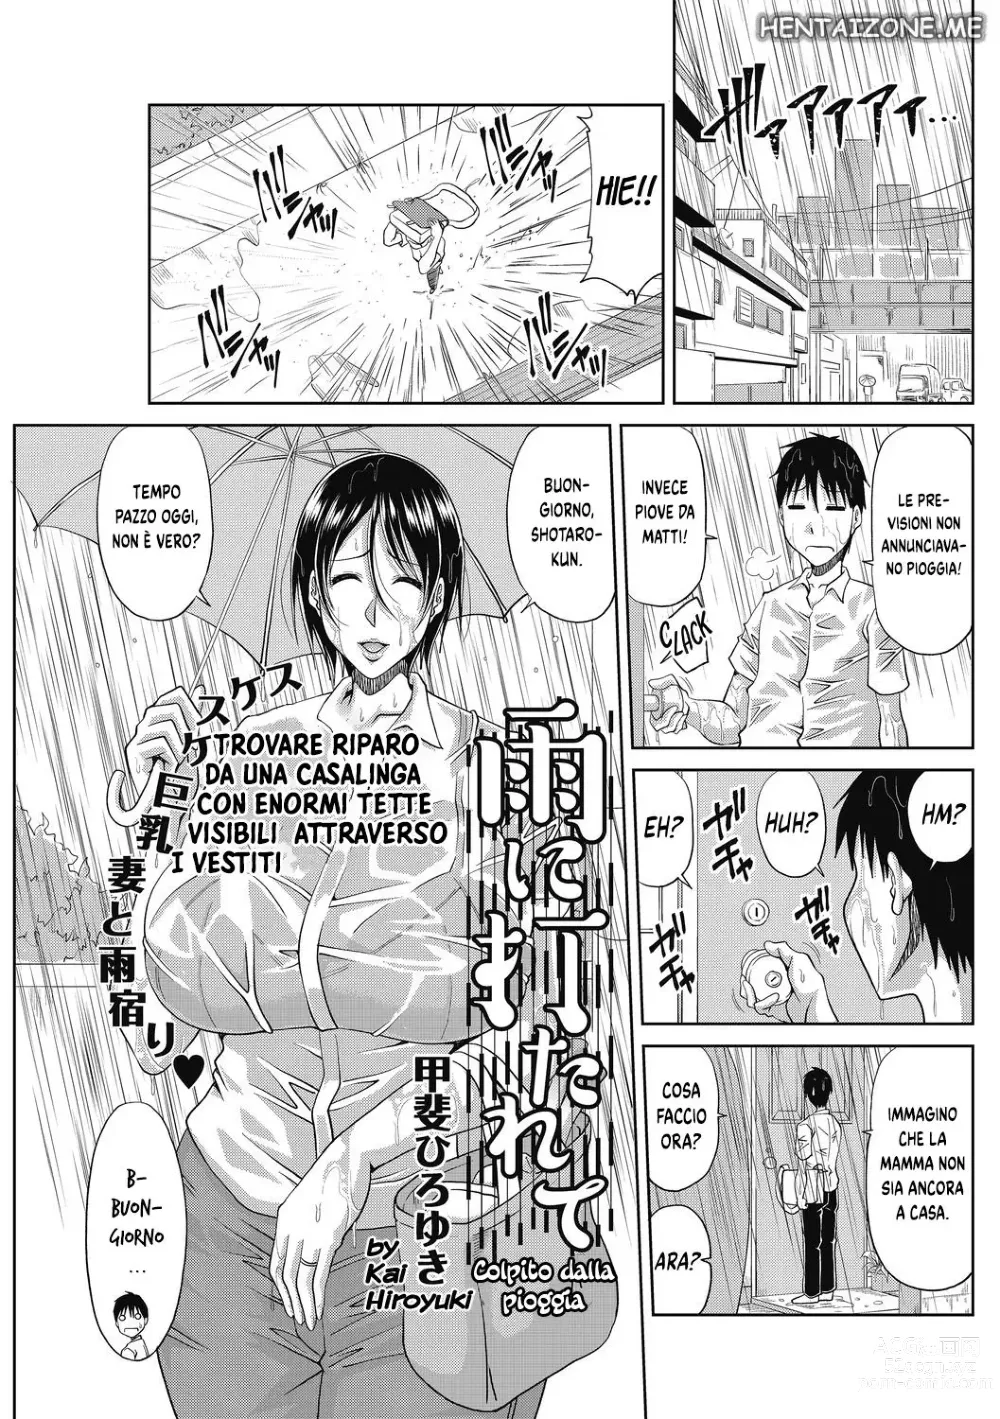 Page 1 of manga Colpito dalla Pioggia